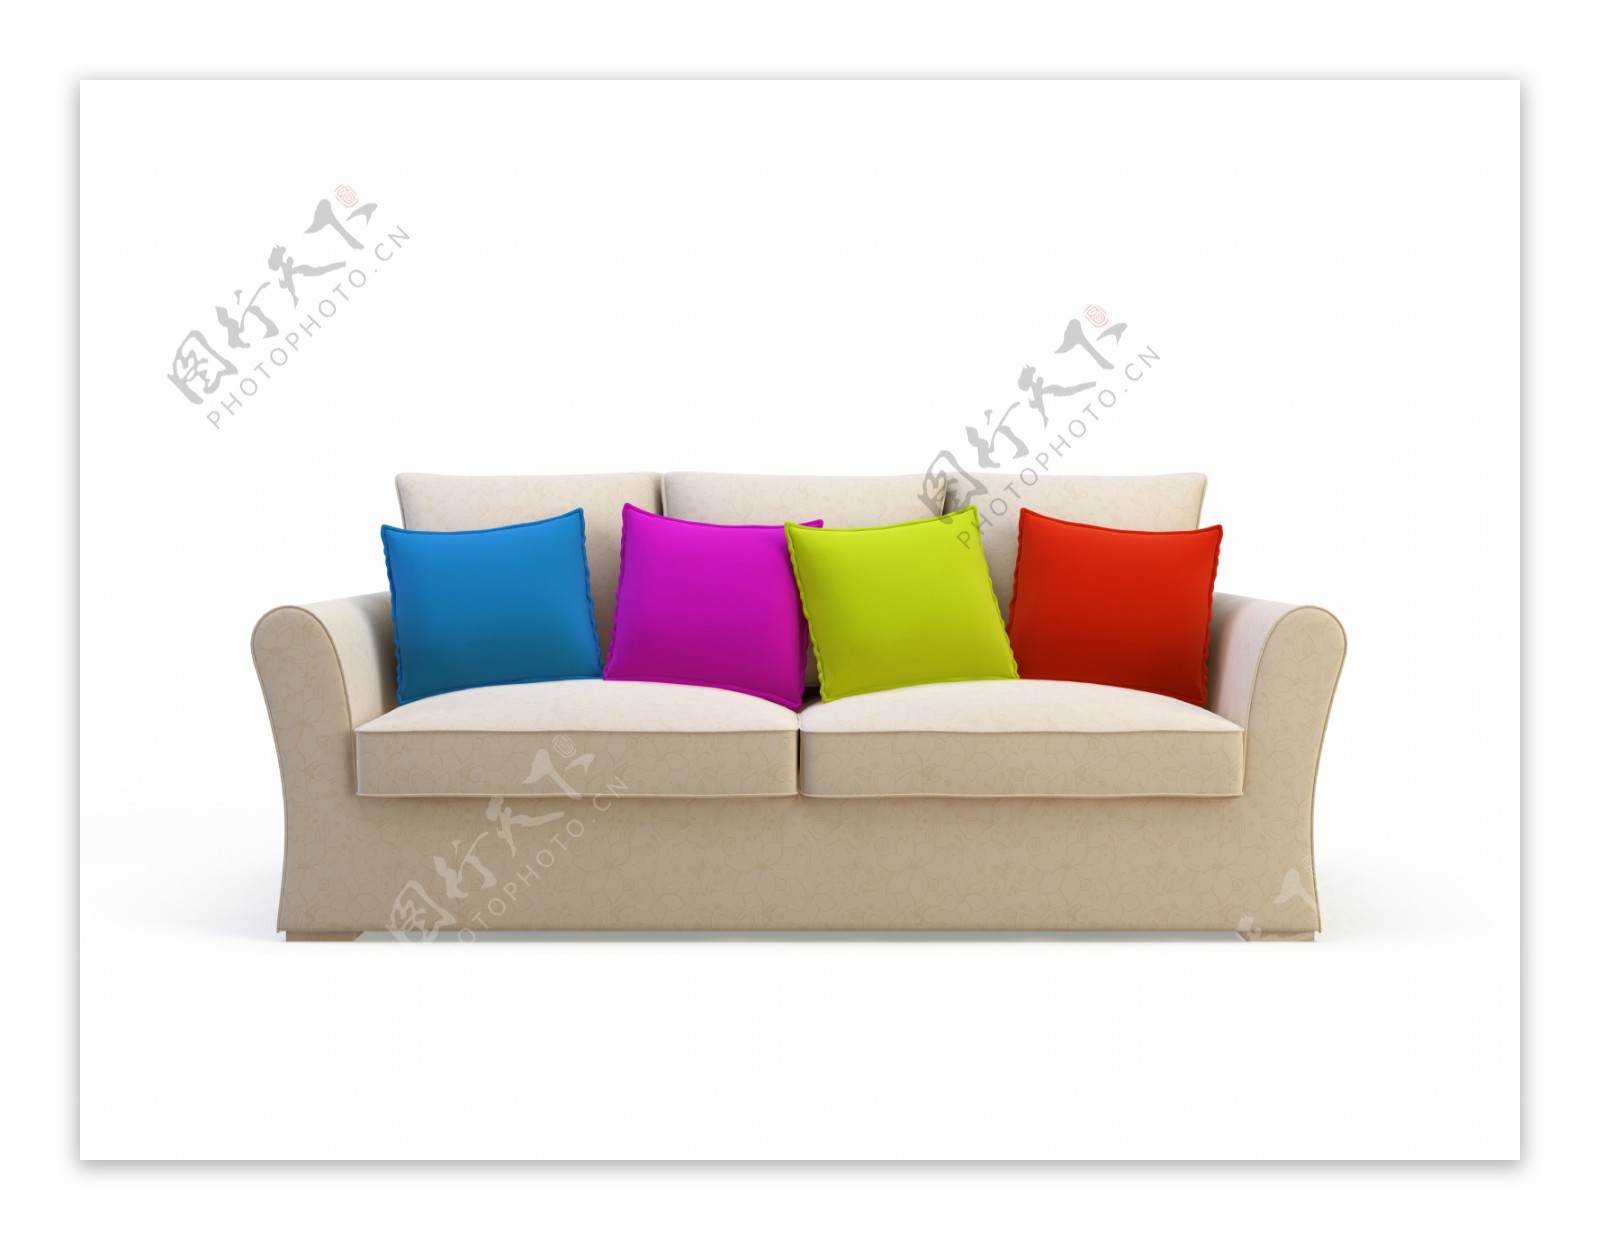 米色沙发与彩色抱枕图片